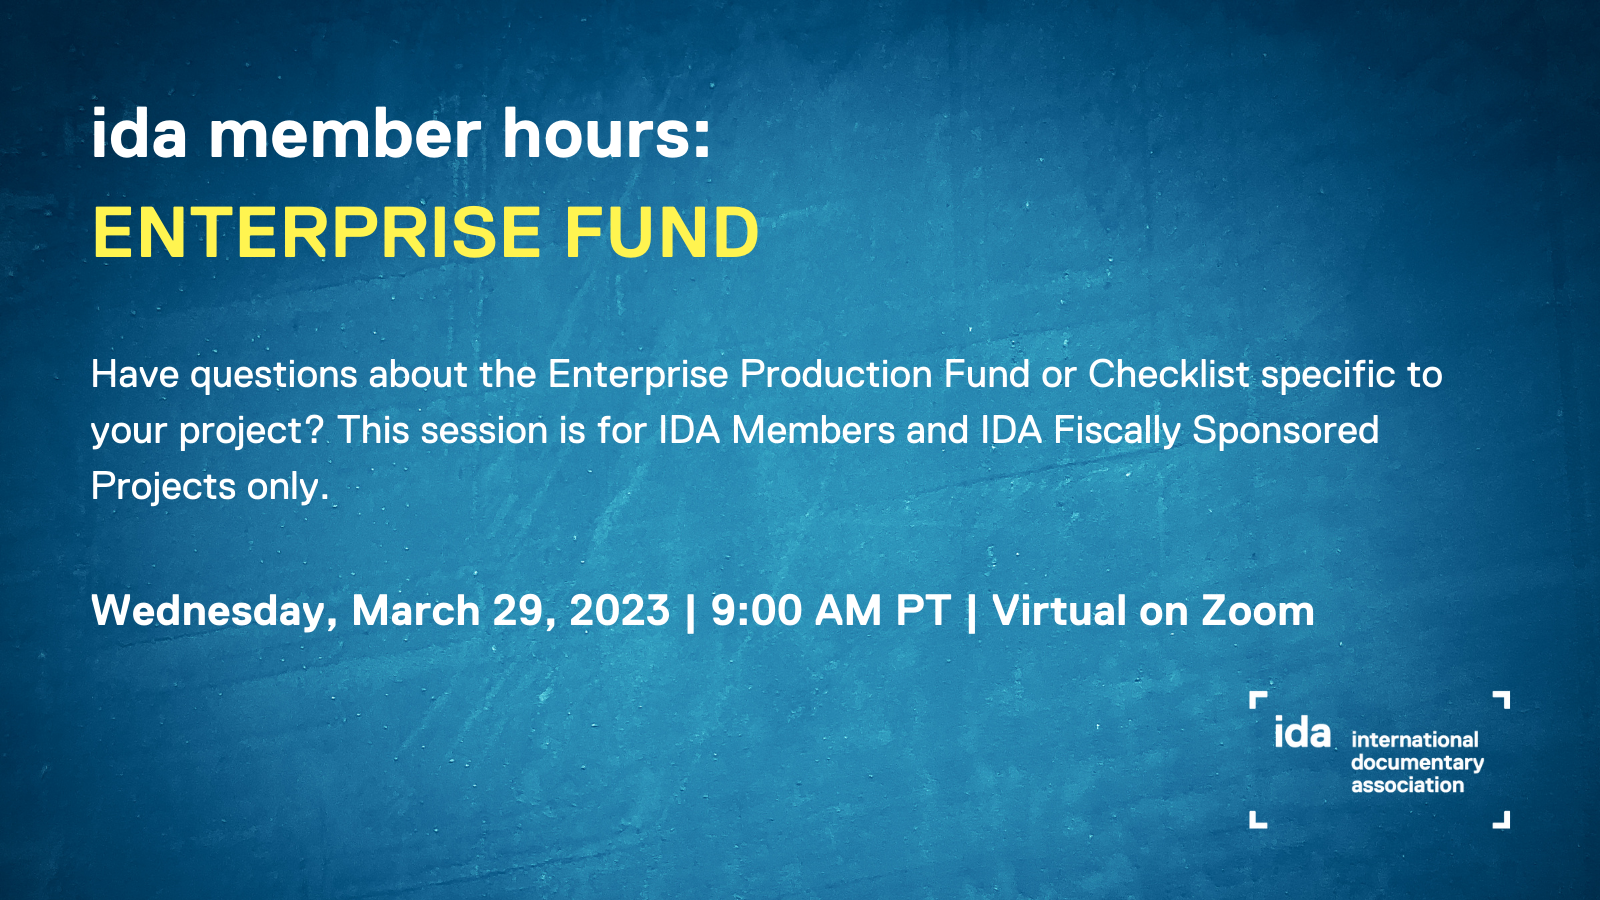 ida member hours: enterprise fund Q&A session flyer